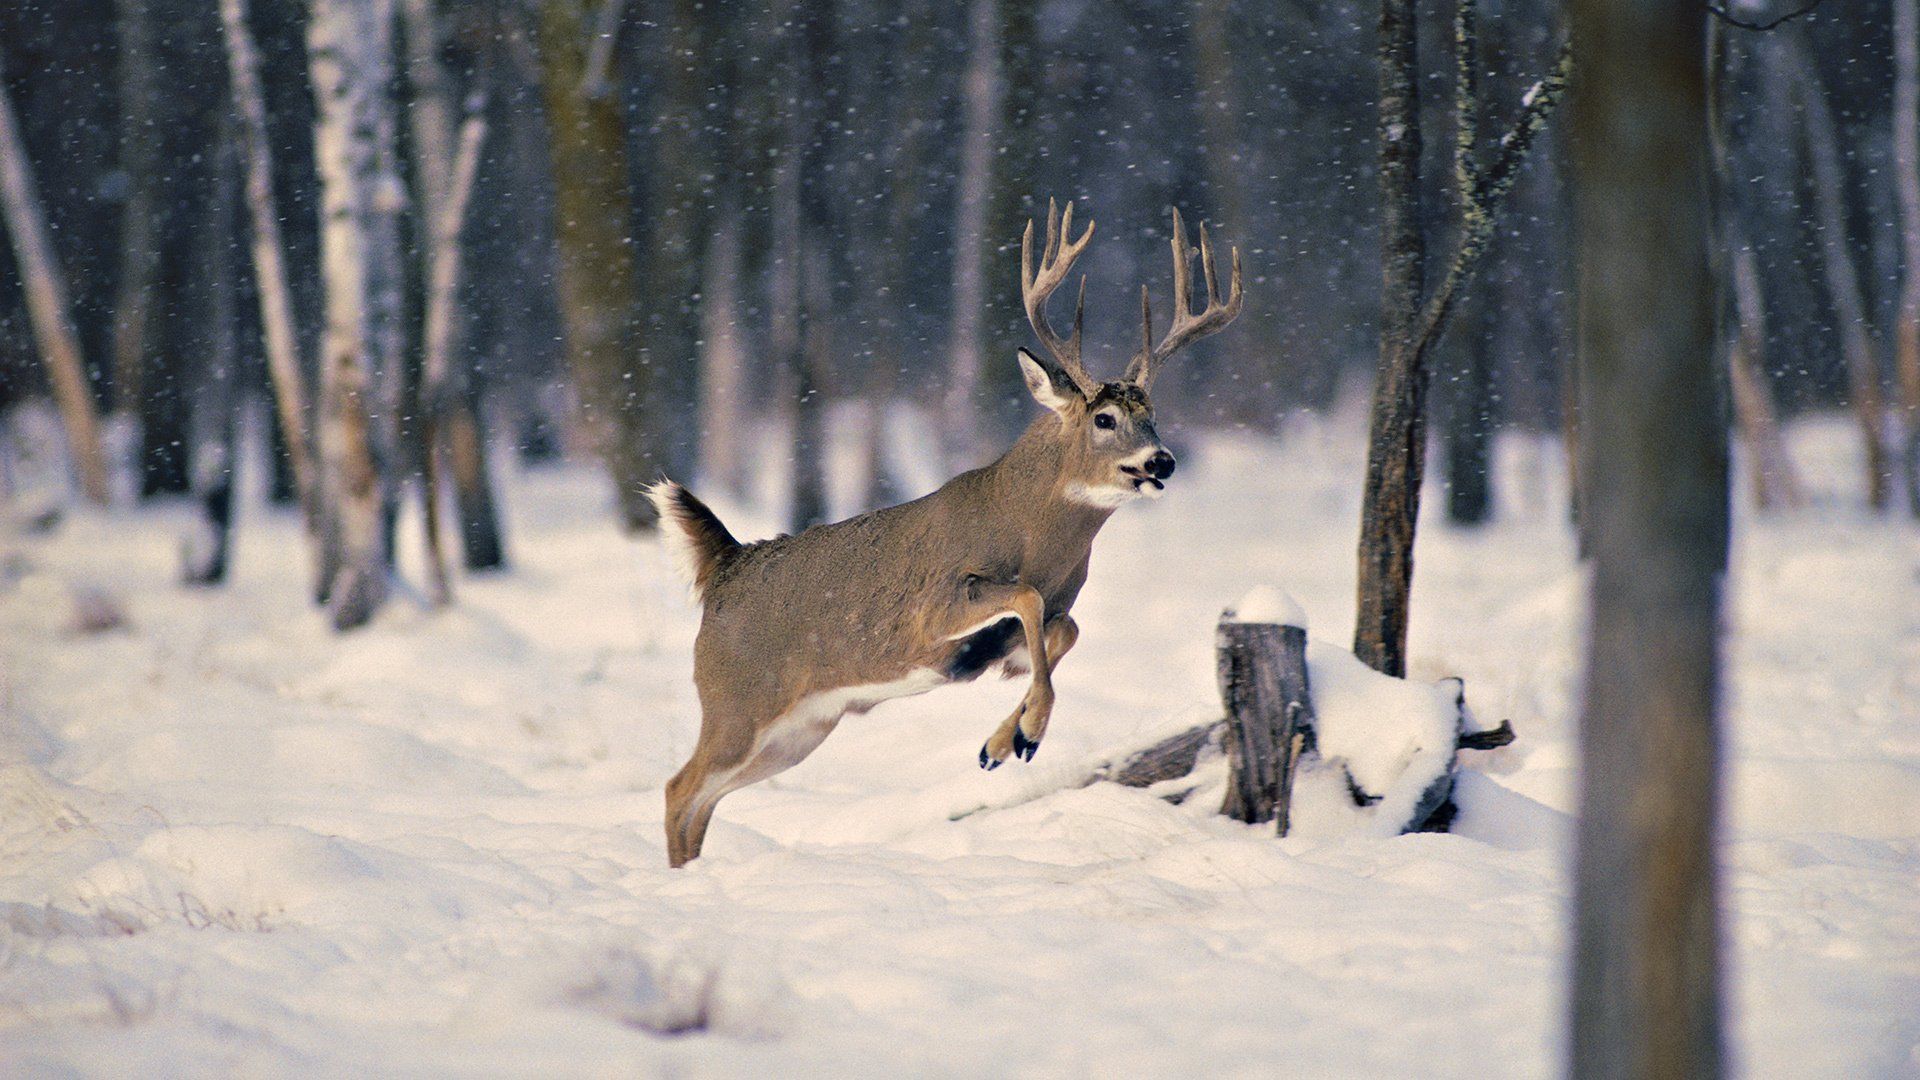 Winter Deer Wallpaper Background